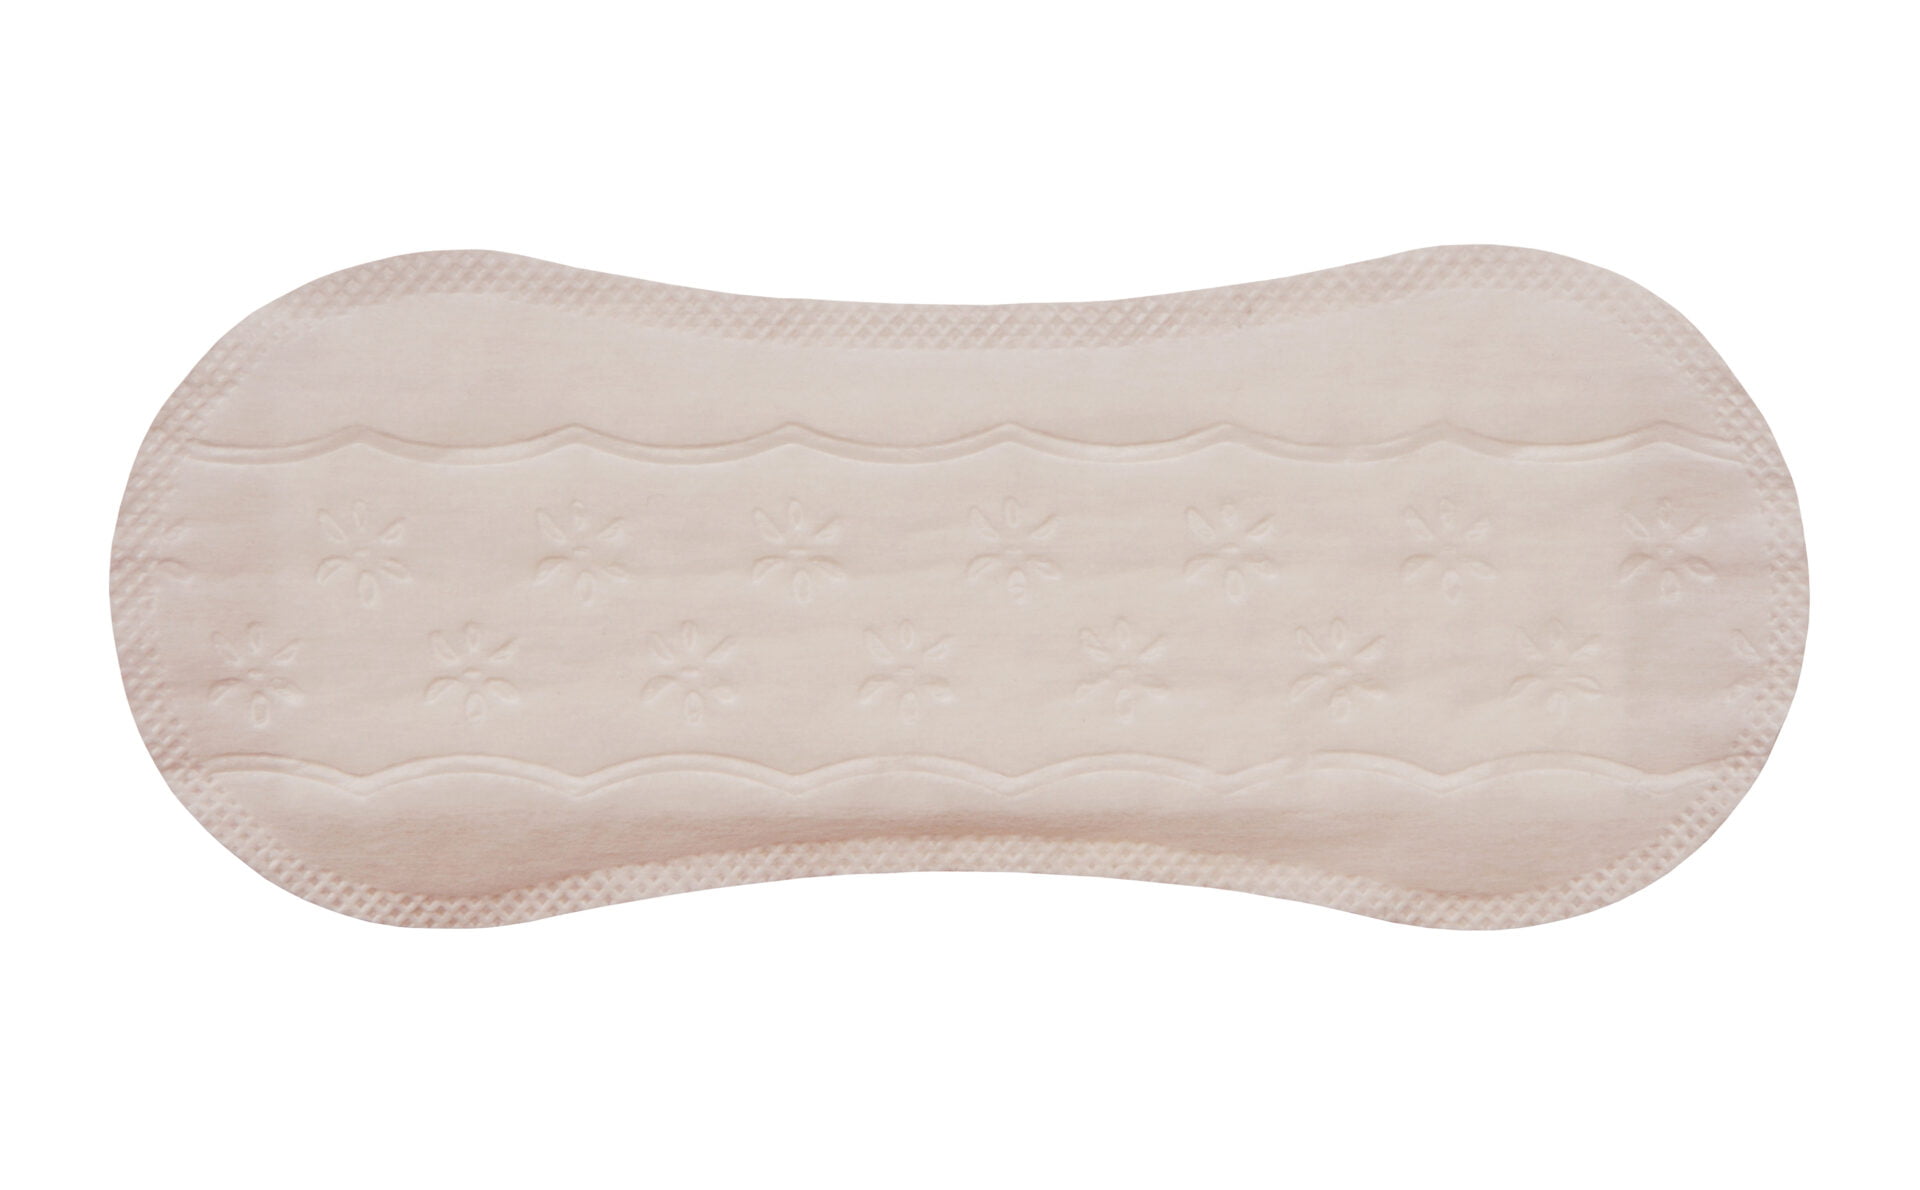 sanitary towel, napkin for woman